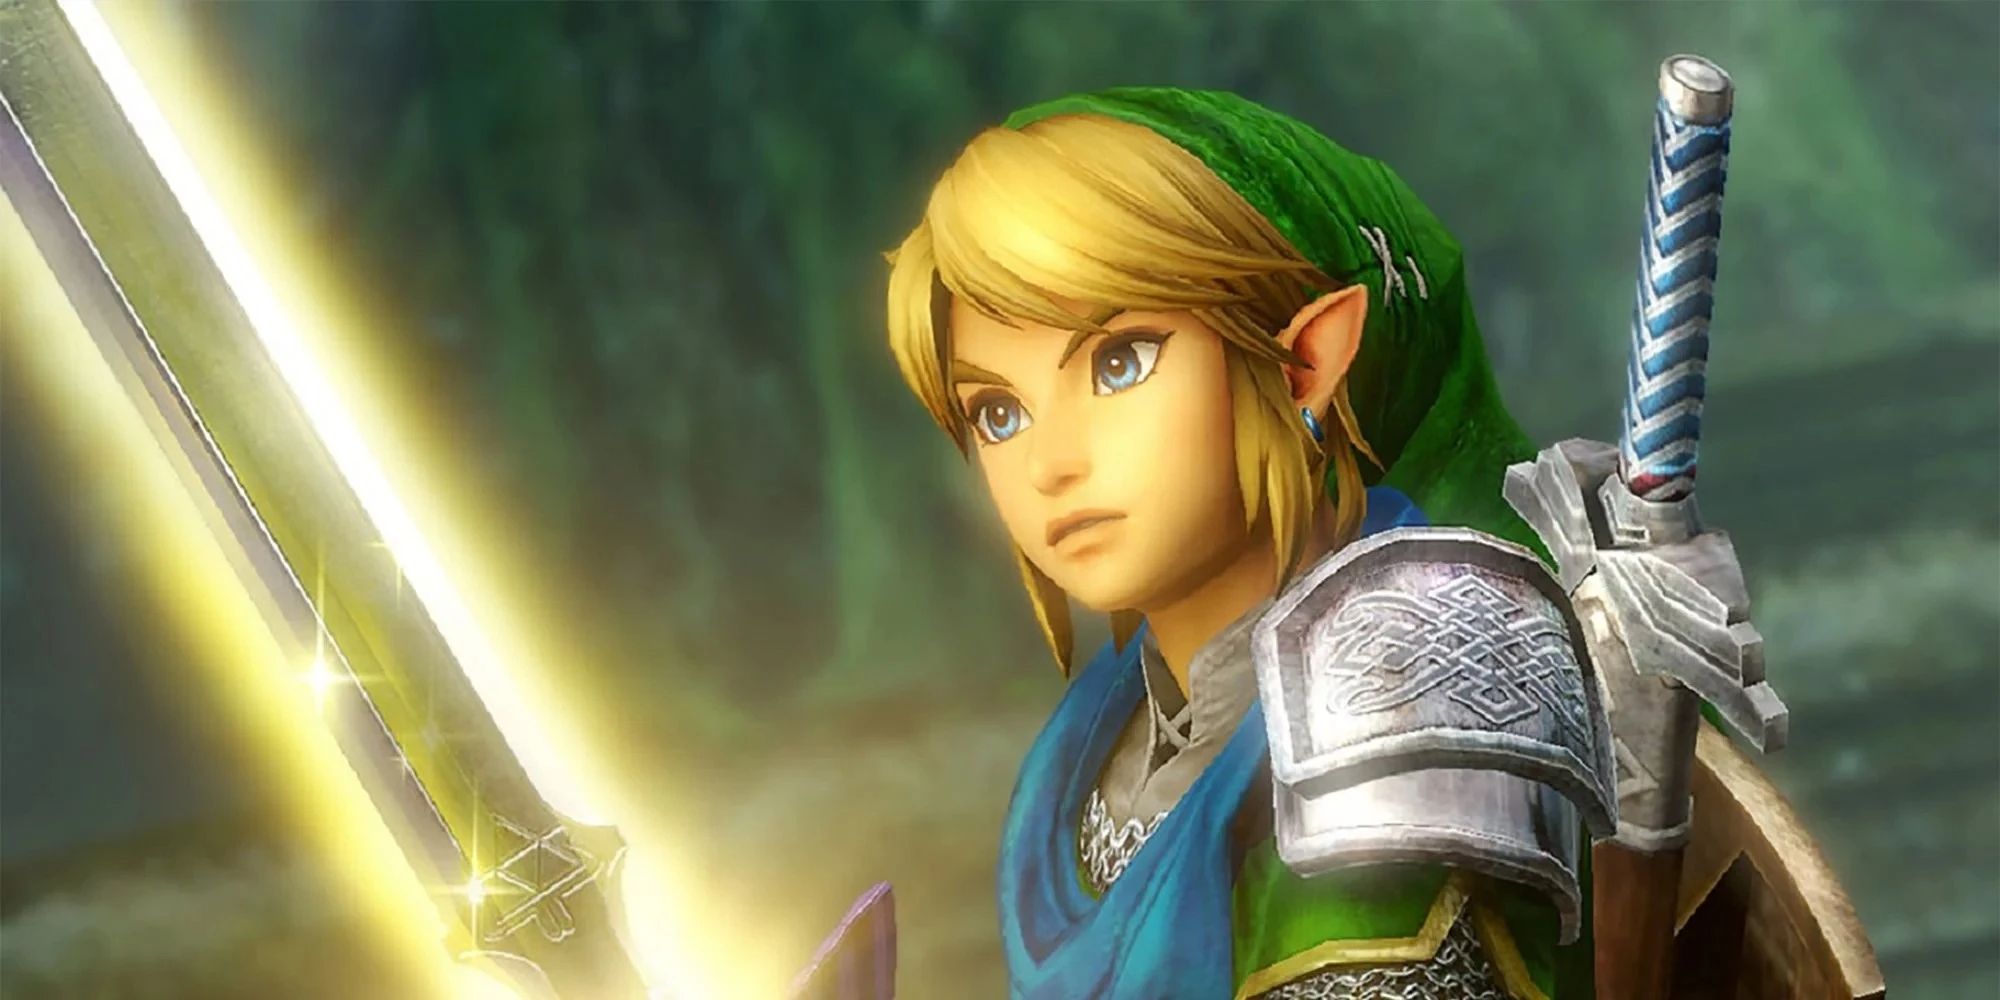 Legend of Zelda Link with glowing sword